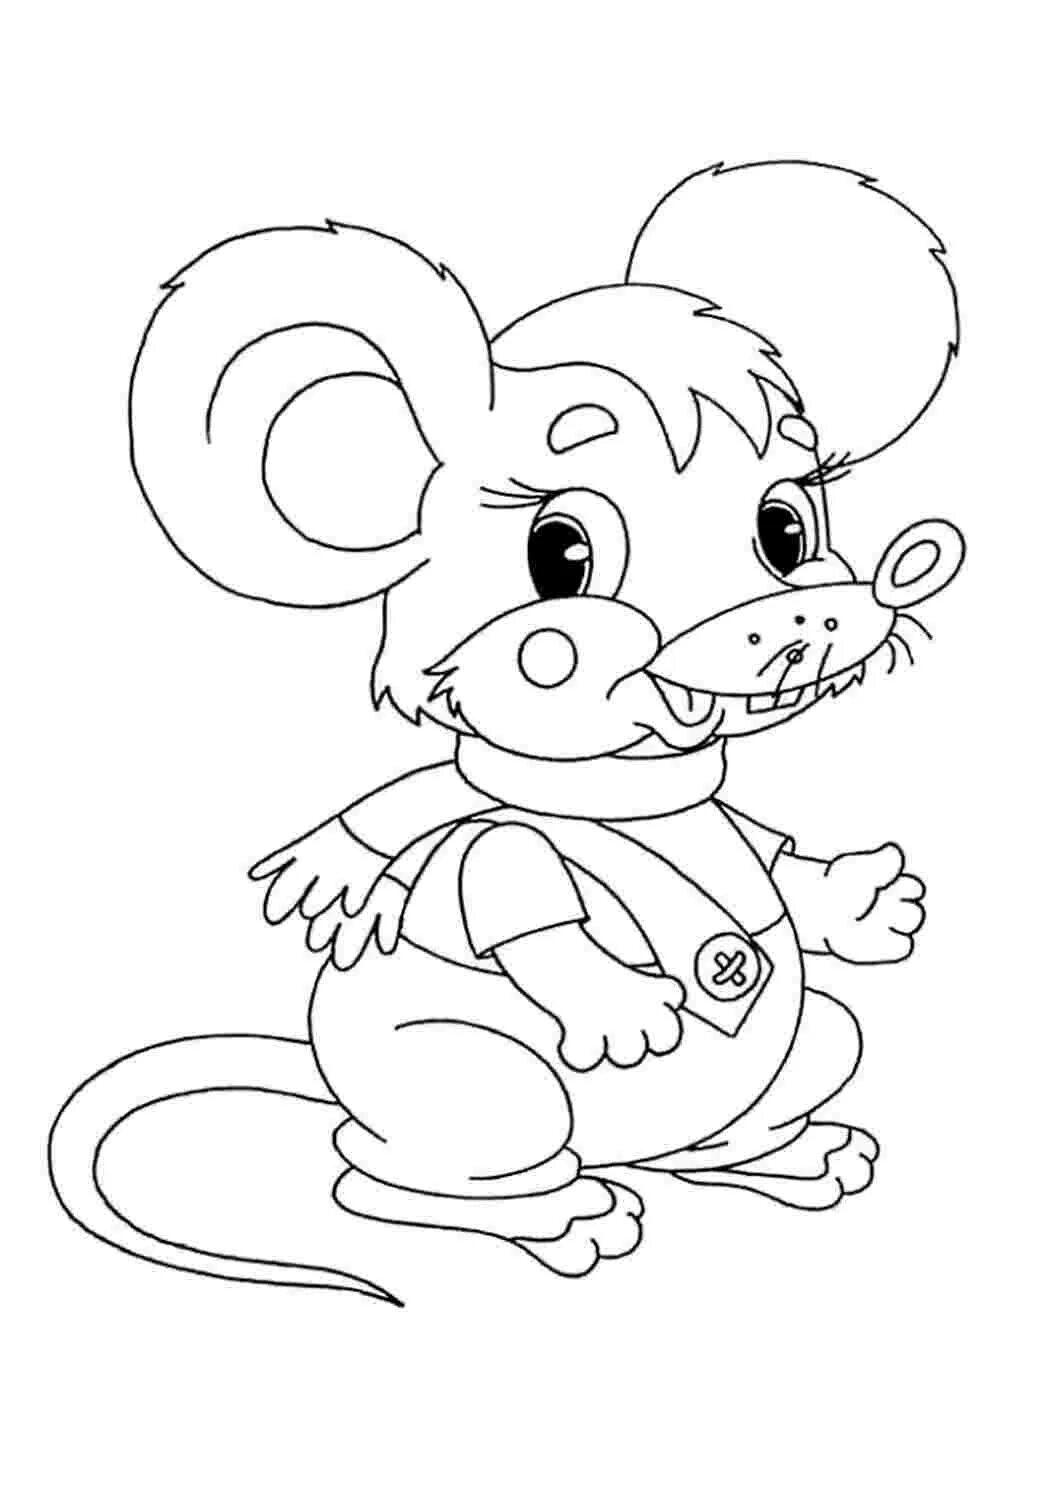 Раскраска мышка. Мышонок раскраска для детей. Раскраска зверята для детей. Мышка раскраска для детей. Раскраска мышь распечатать